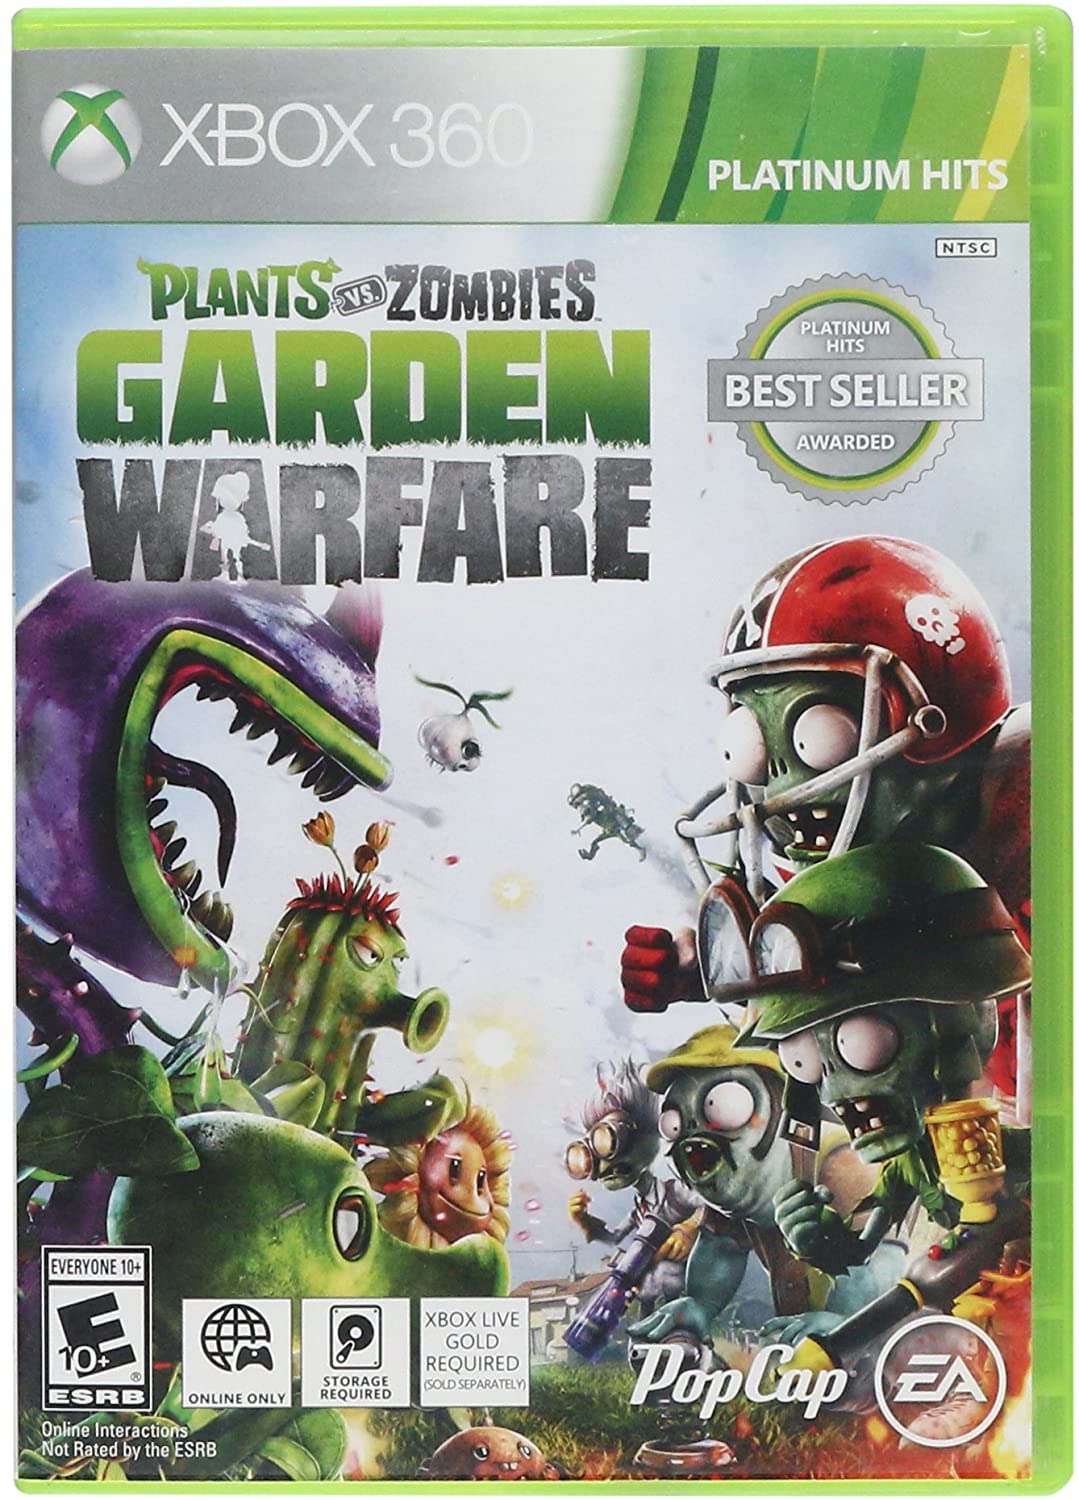 Plants Vs Zombies Online: Garden Warfare (NTSC)